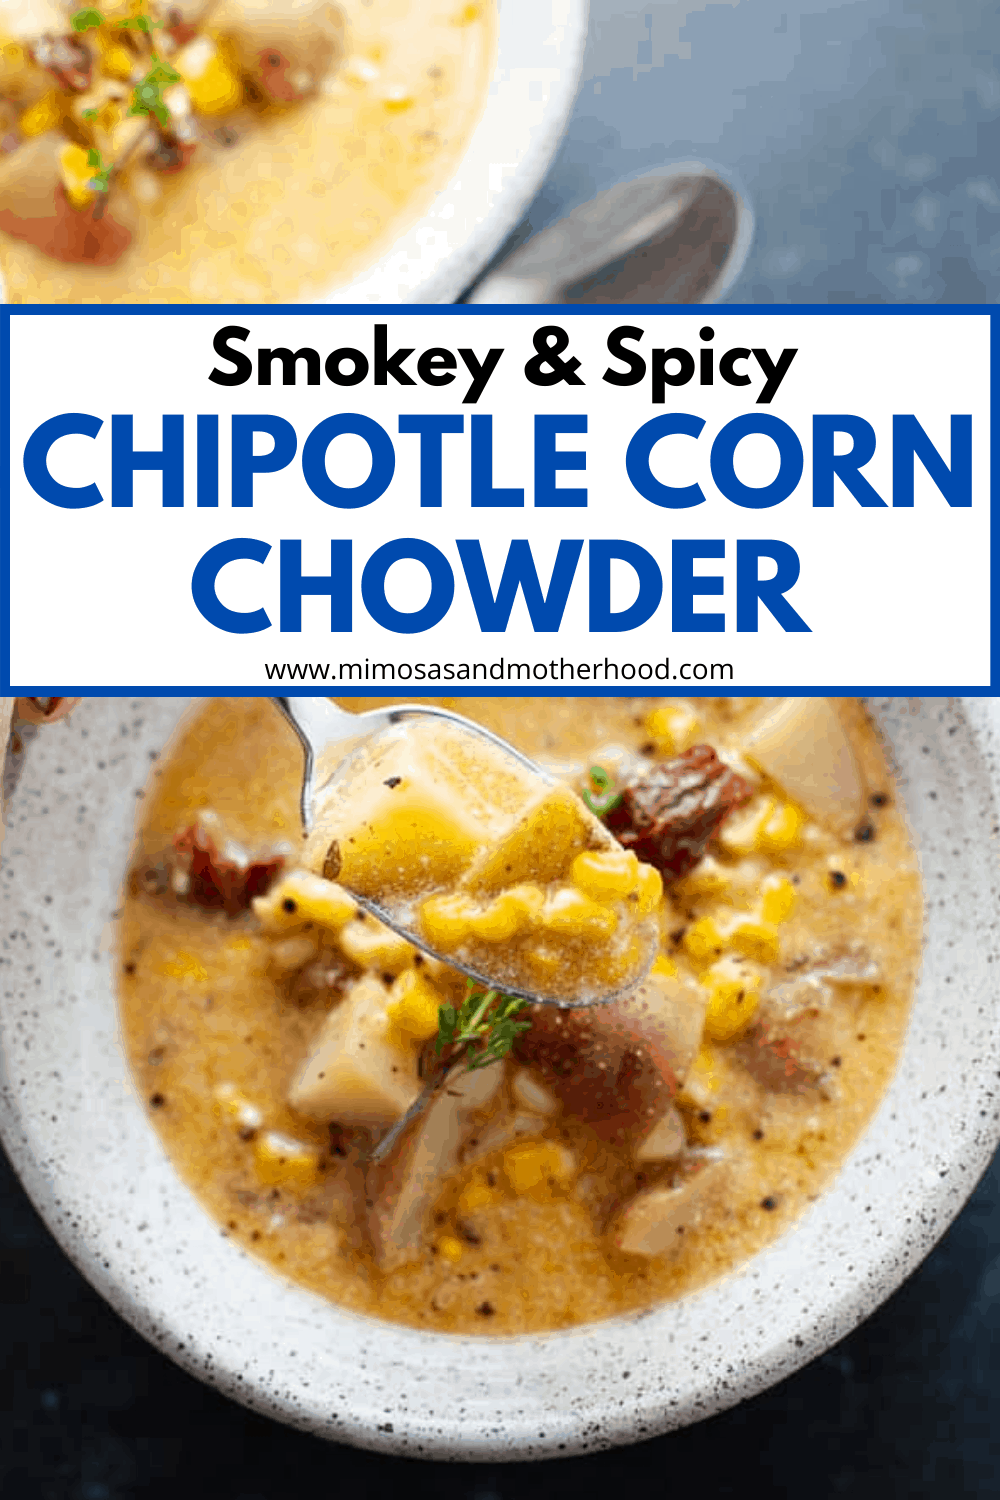 Chipotle Corn Chowder